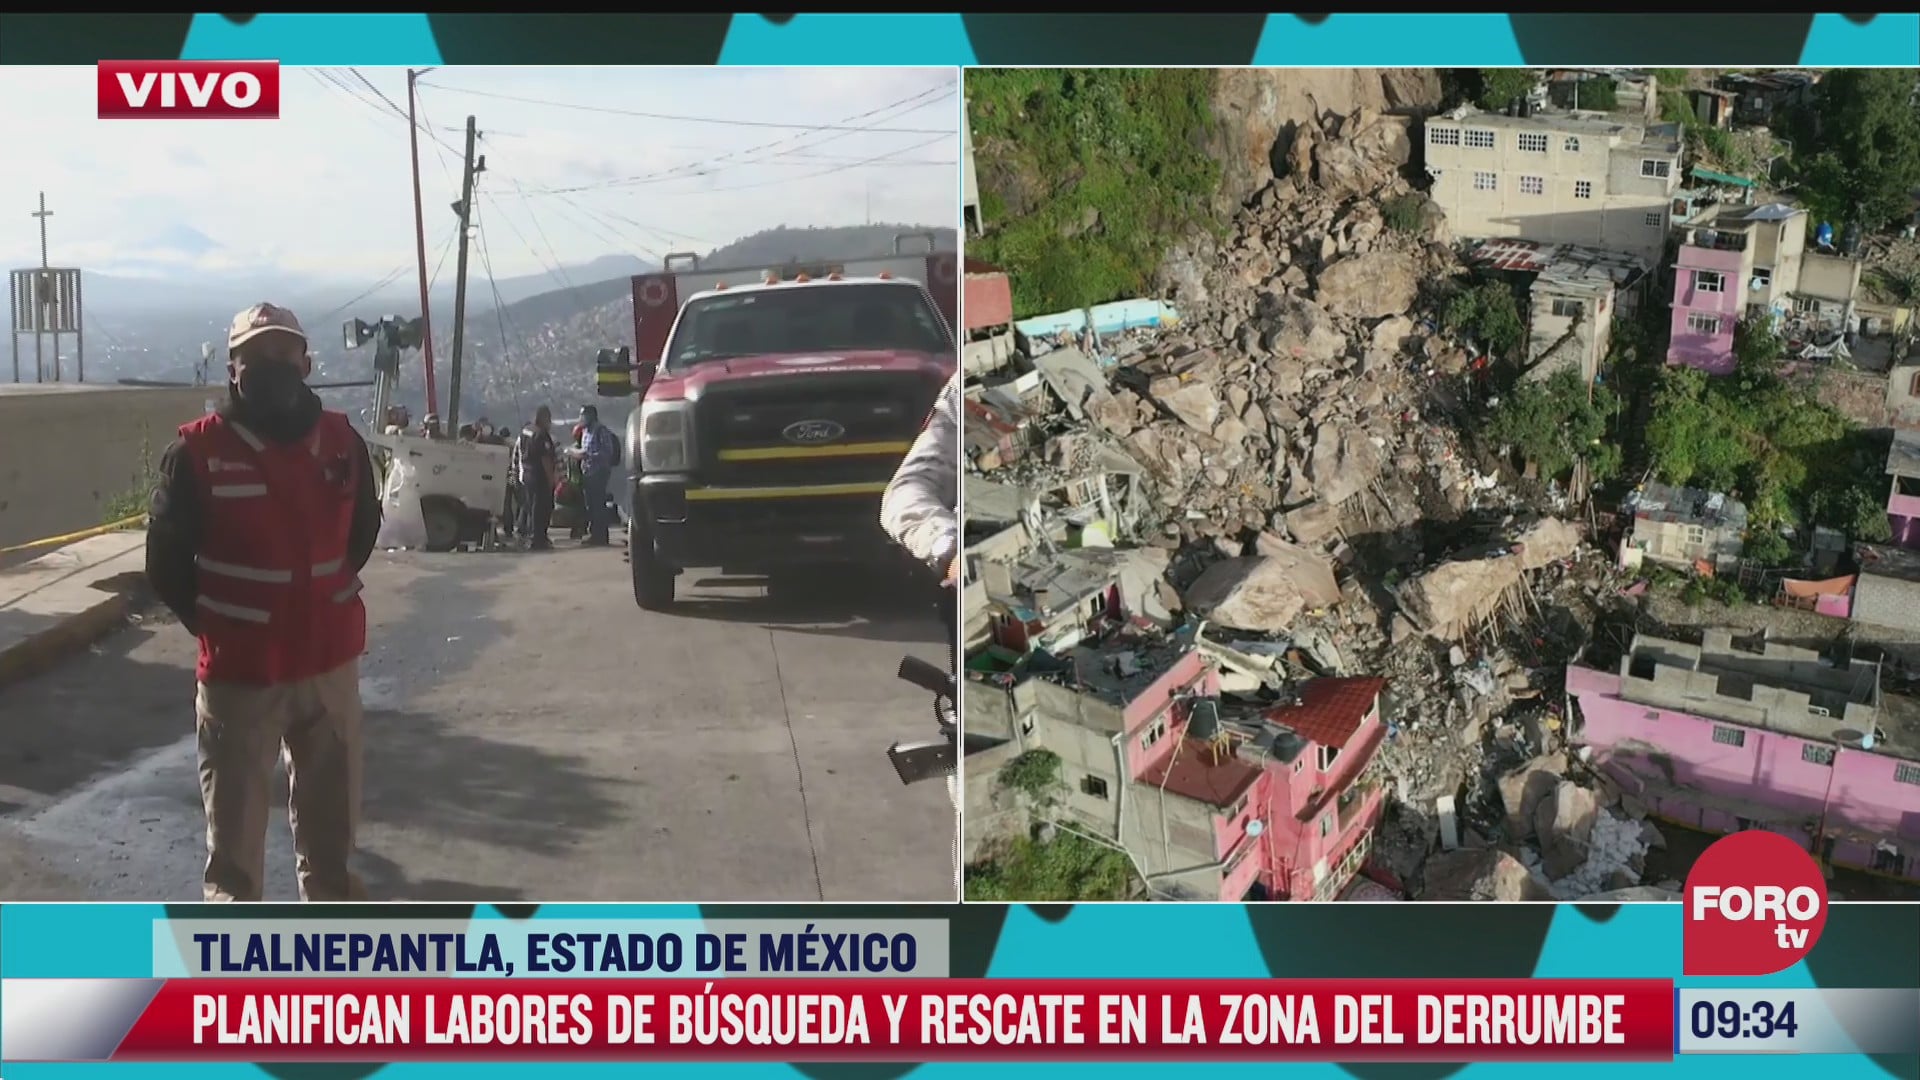 reanudan trabajos de busqueda y rescate en zona del derrumbe en cerro de chiquihuite